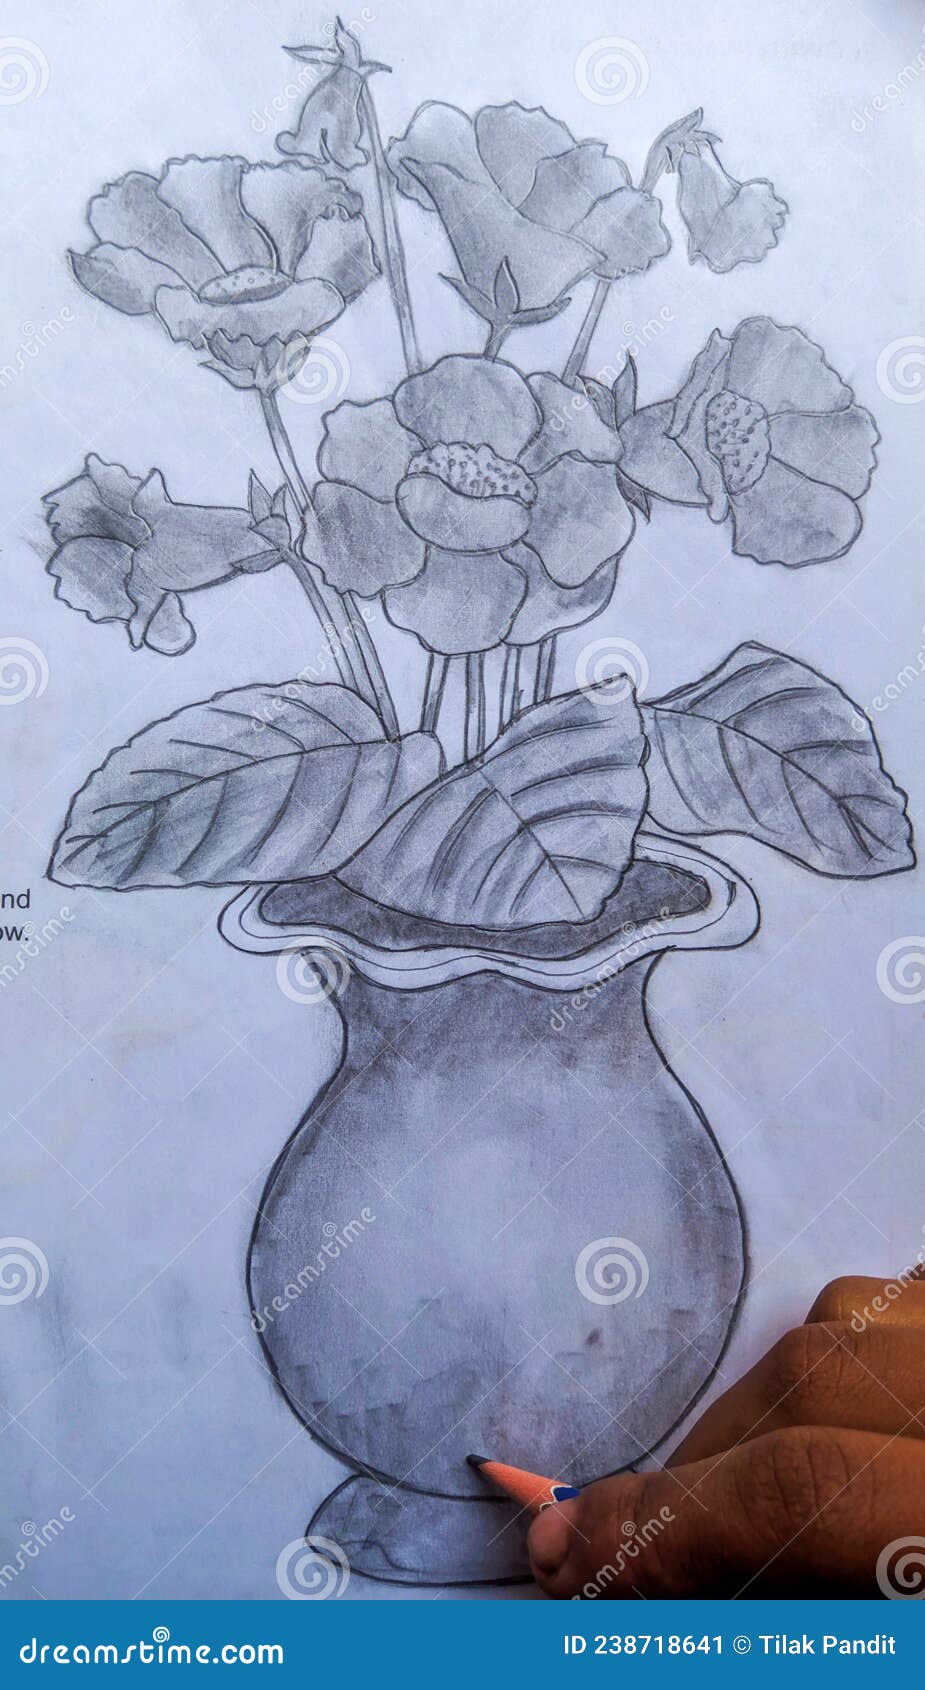 Flower pot sketch | Sketchlovers